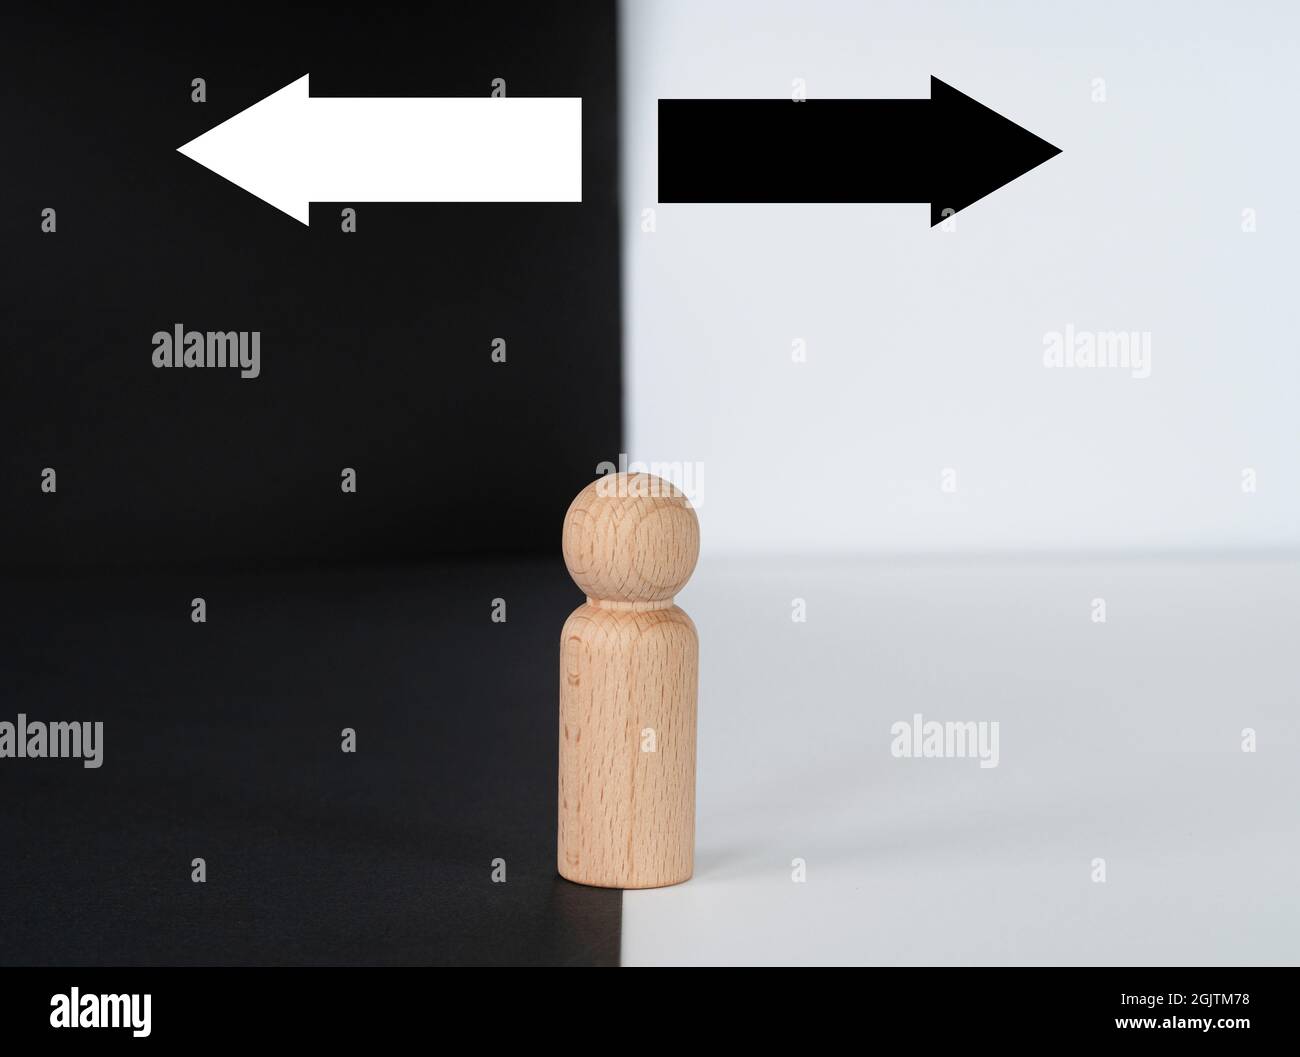 Geschäftskonzept. Entscheidungsfindung dargestellt von einer Holzfigur mit zwei Pfeilen auf schwarzem und weißem Hintergrund. Selektive Fokuspunkte. Stockfoto